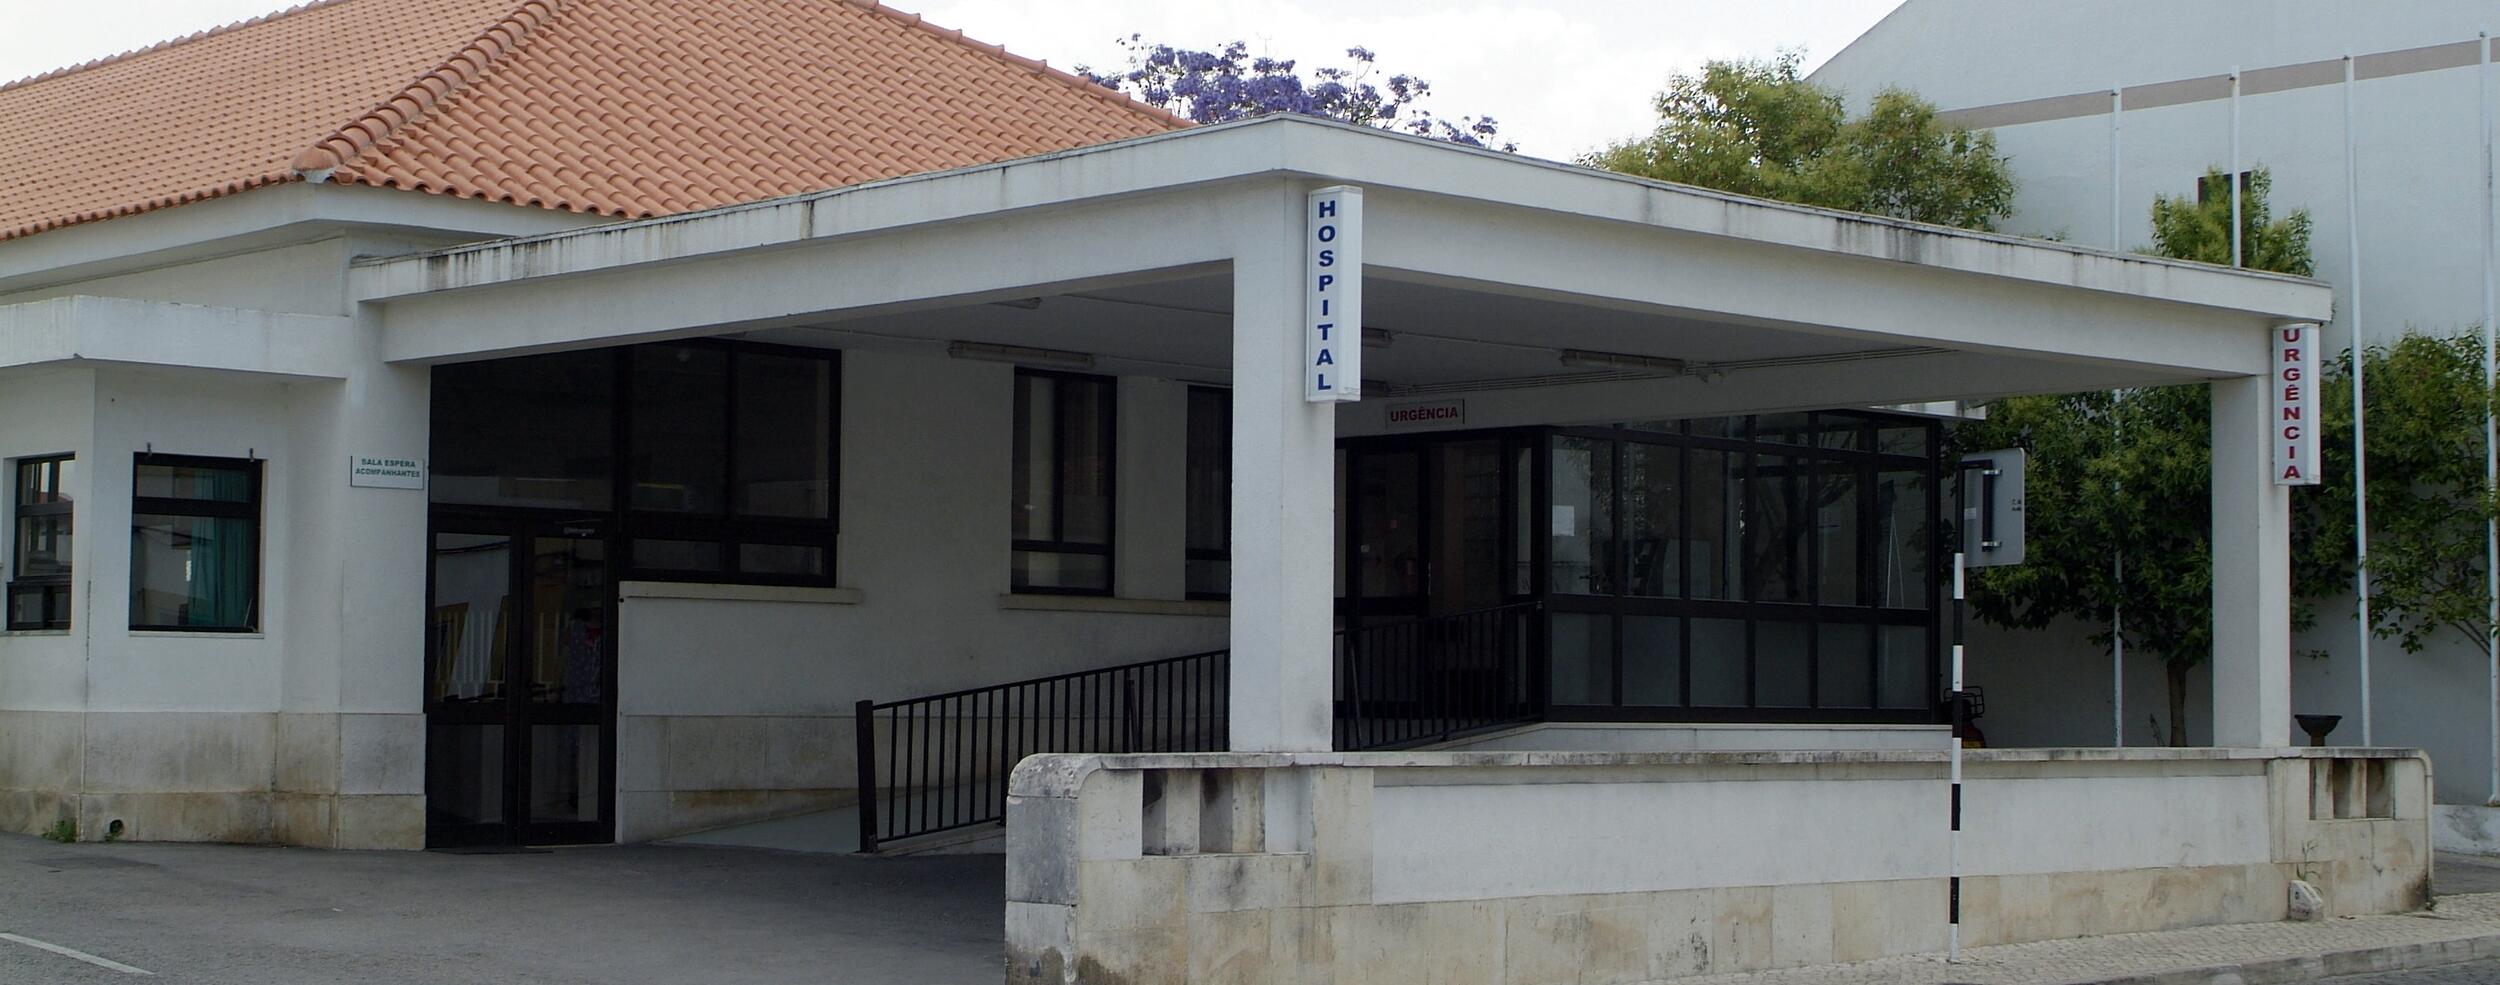 Câmara defende manutenção da urgência no Hospital do Montijo